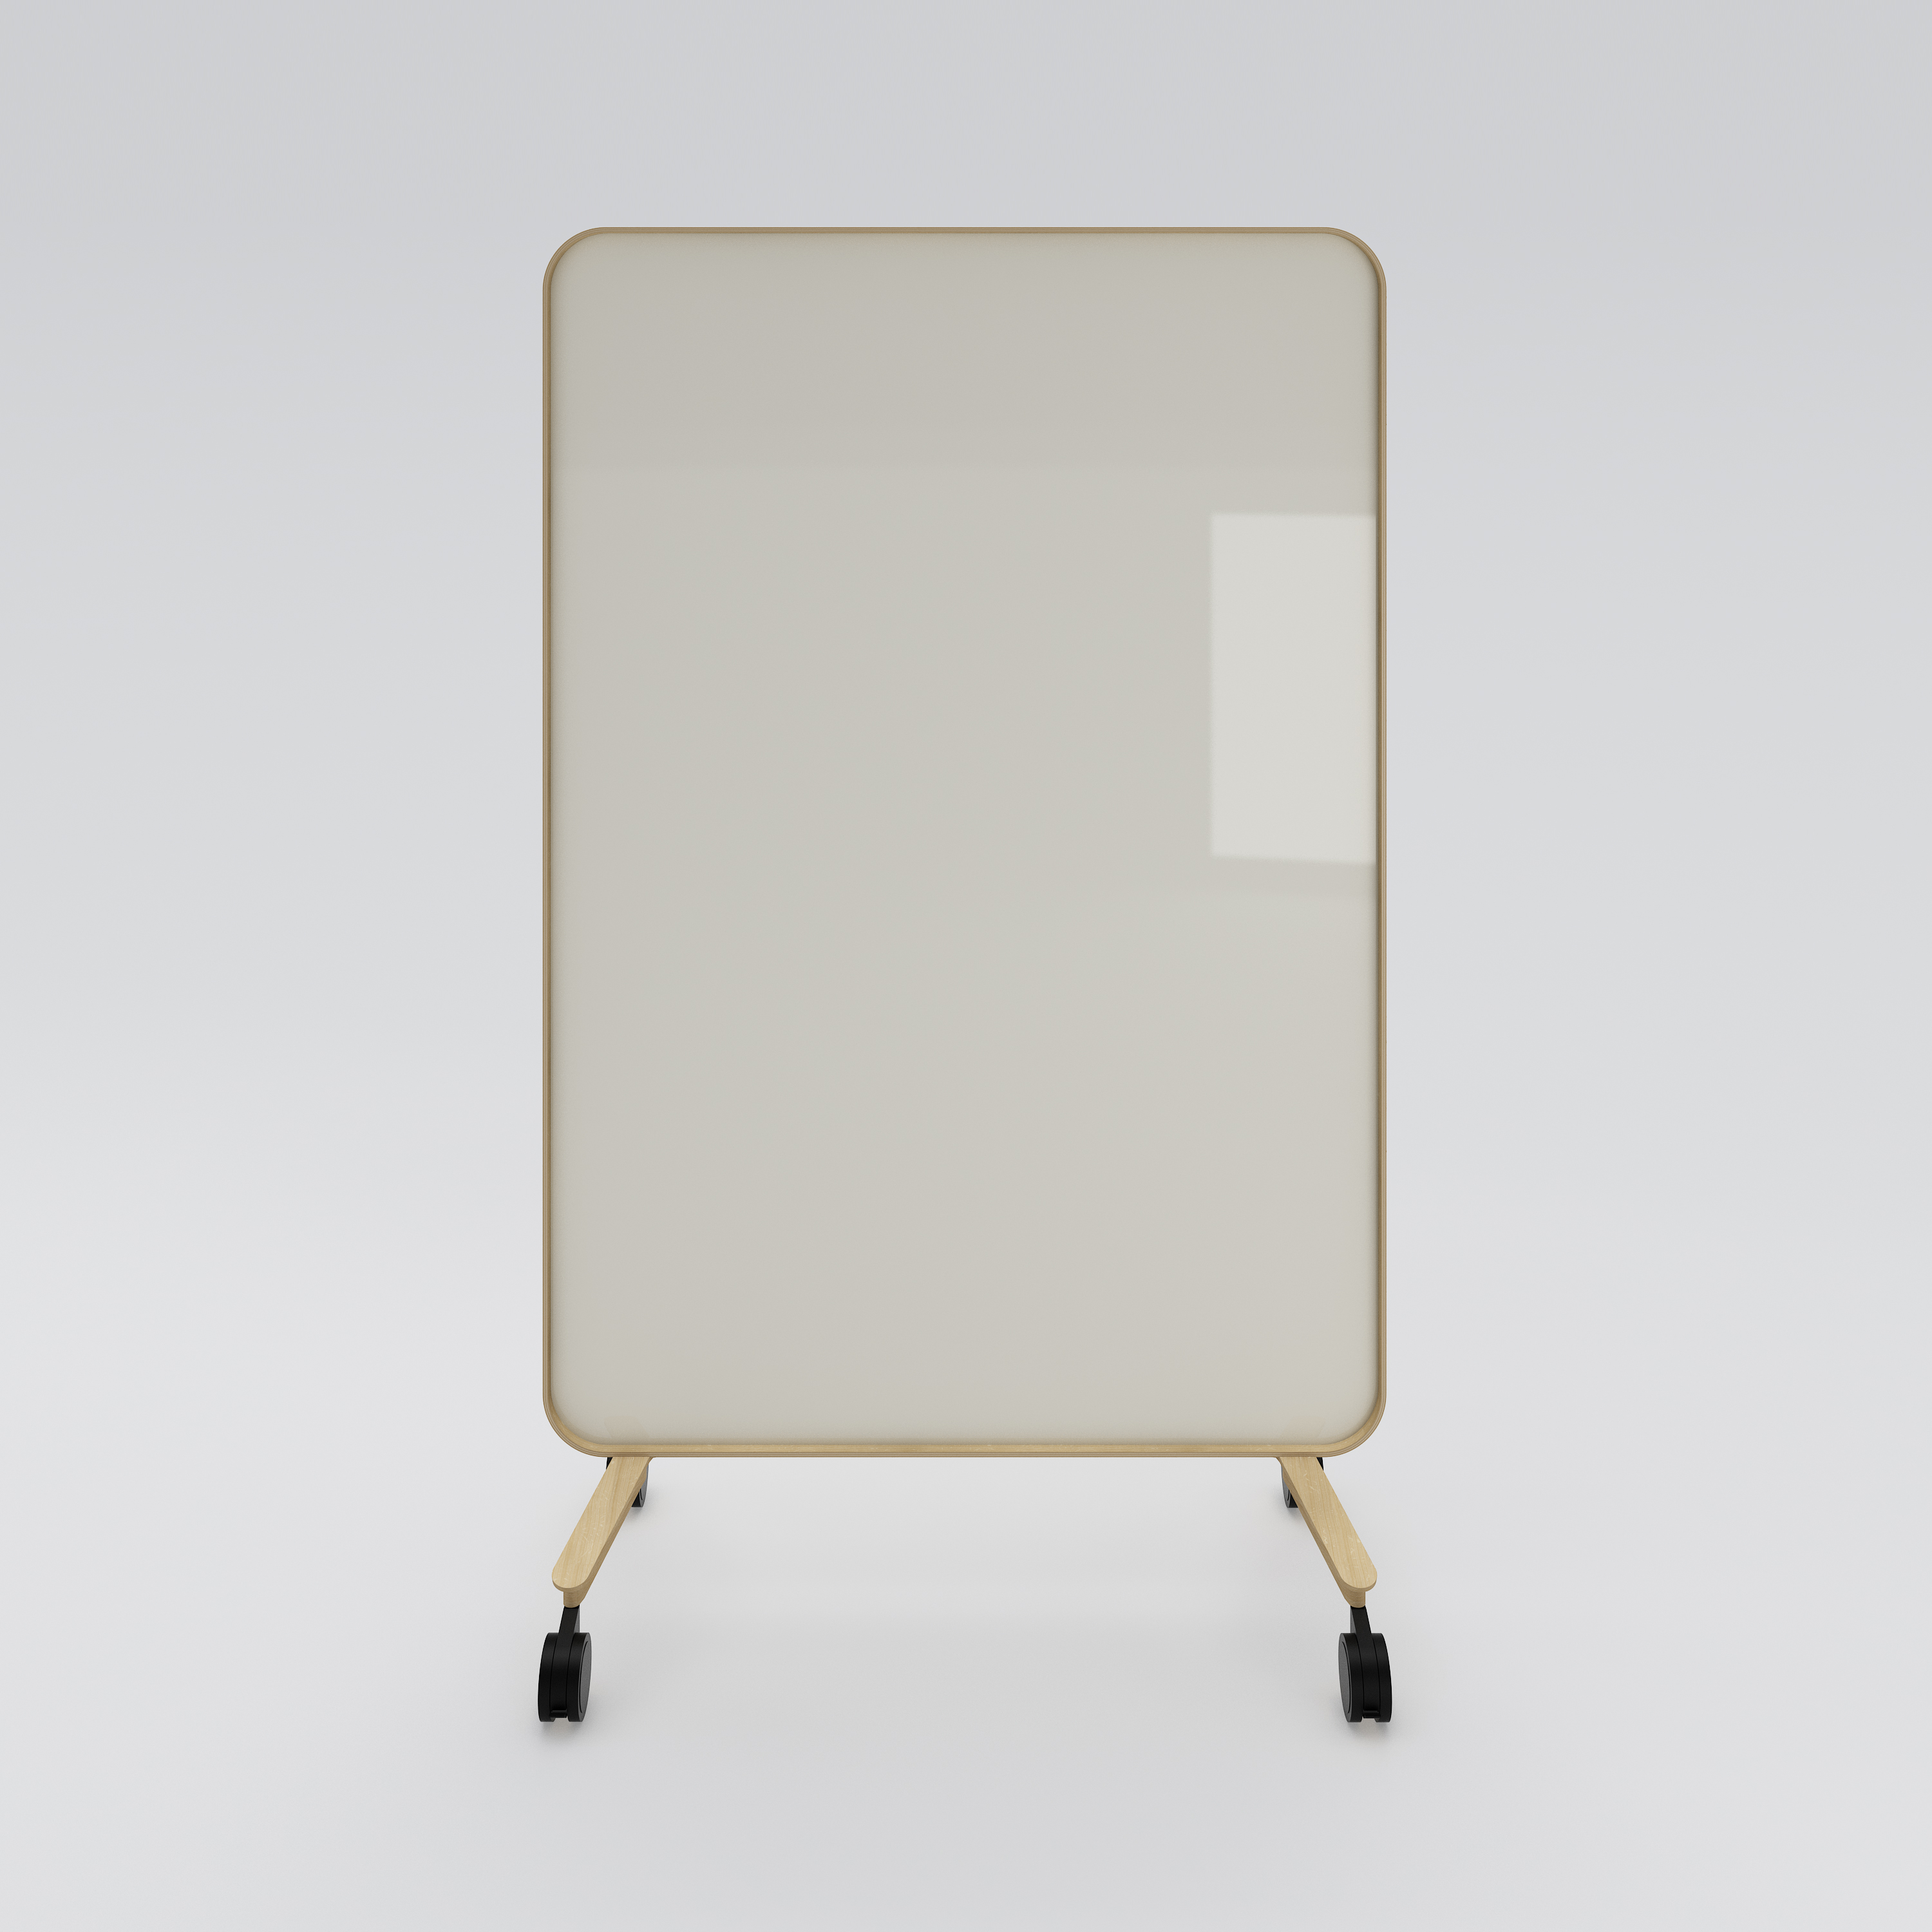 Mobile whiteboard Frame, 1200x1960, oak, light gray glass